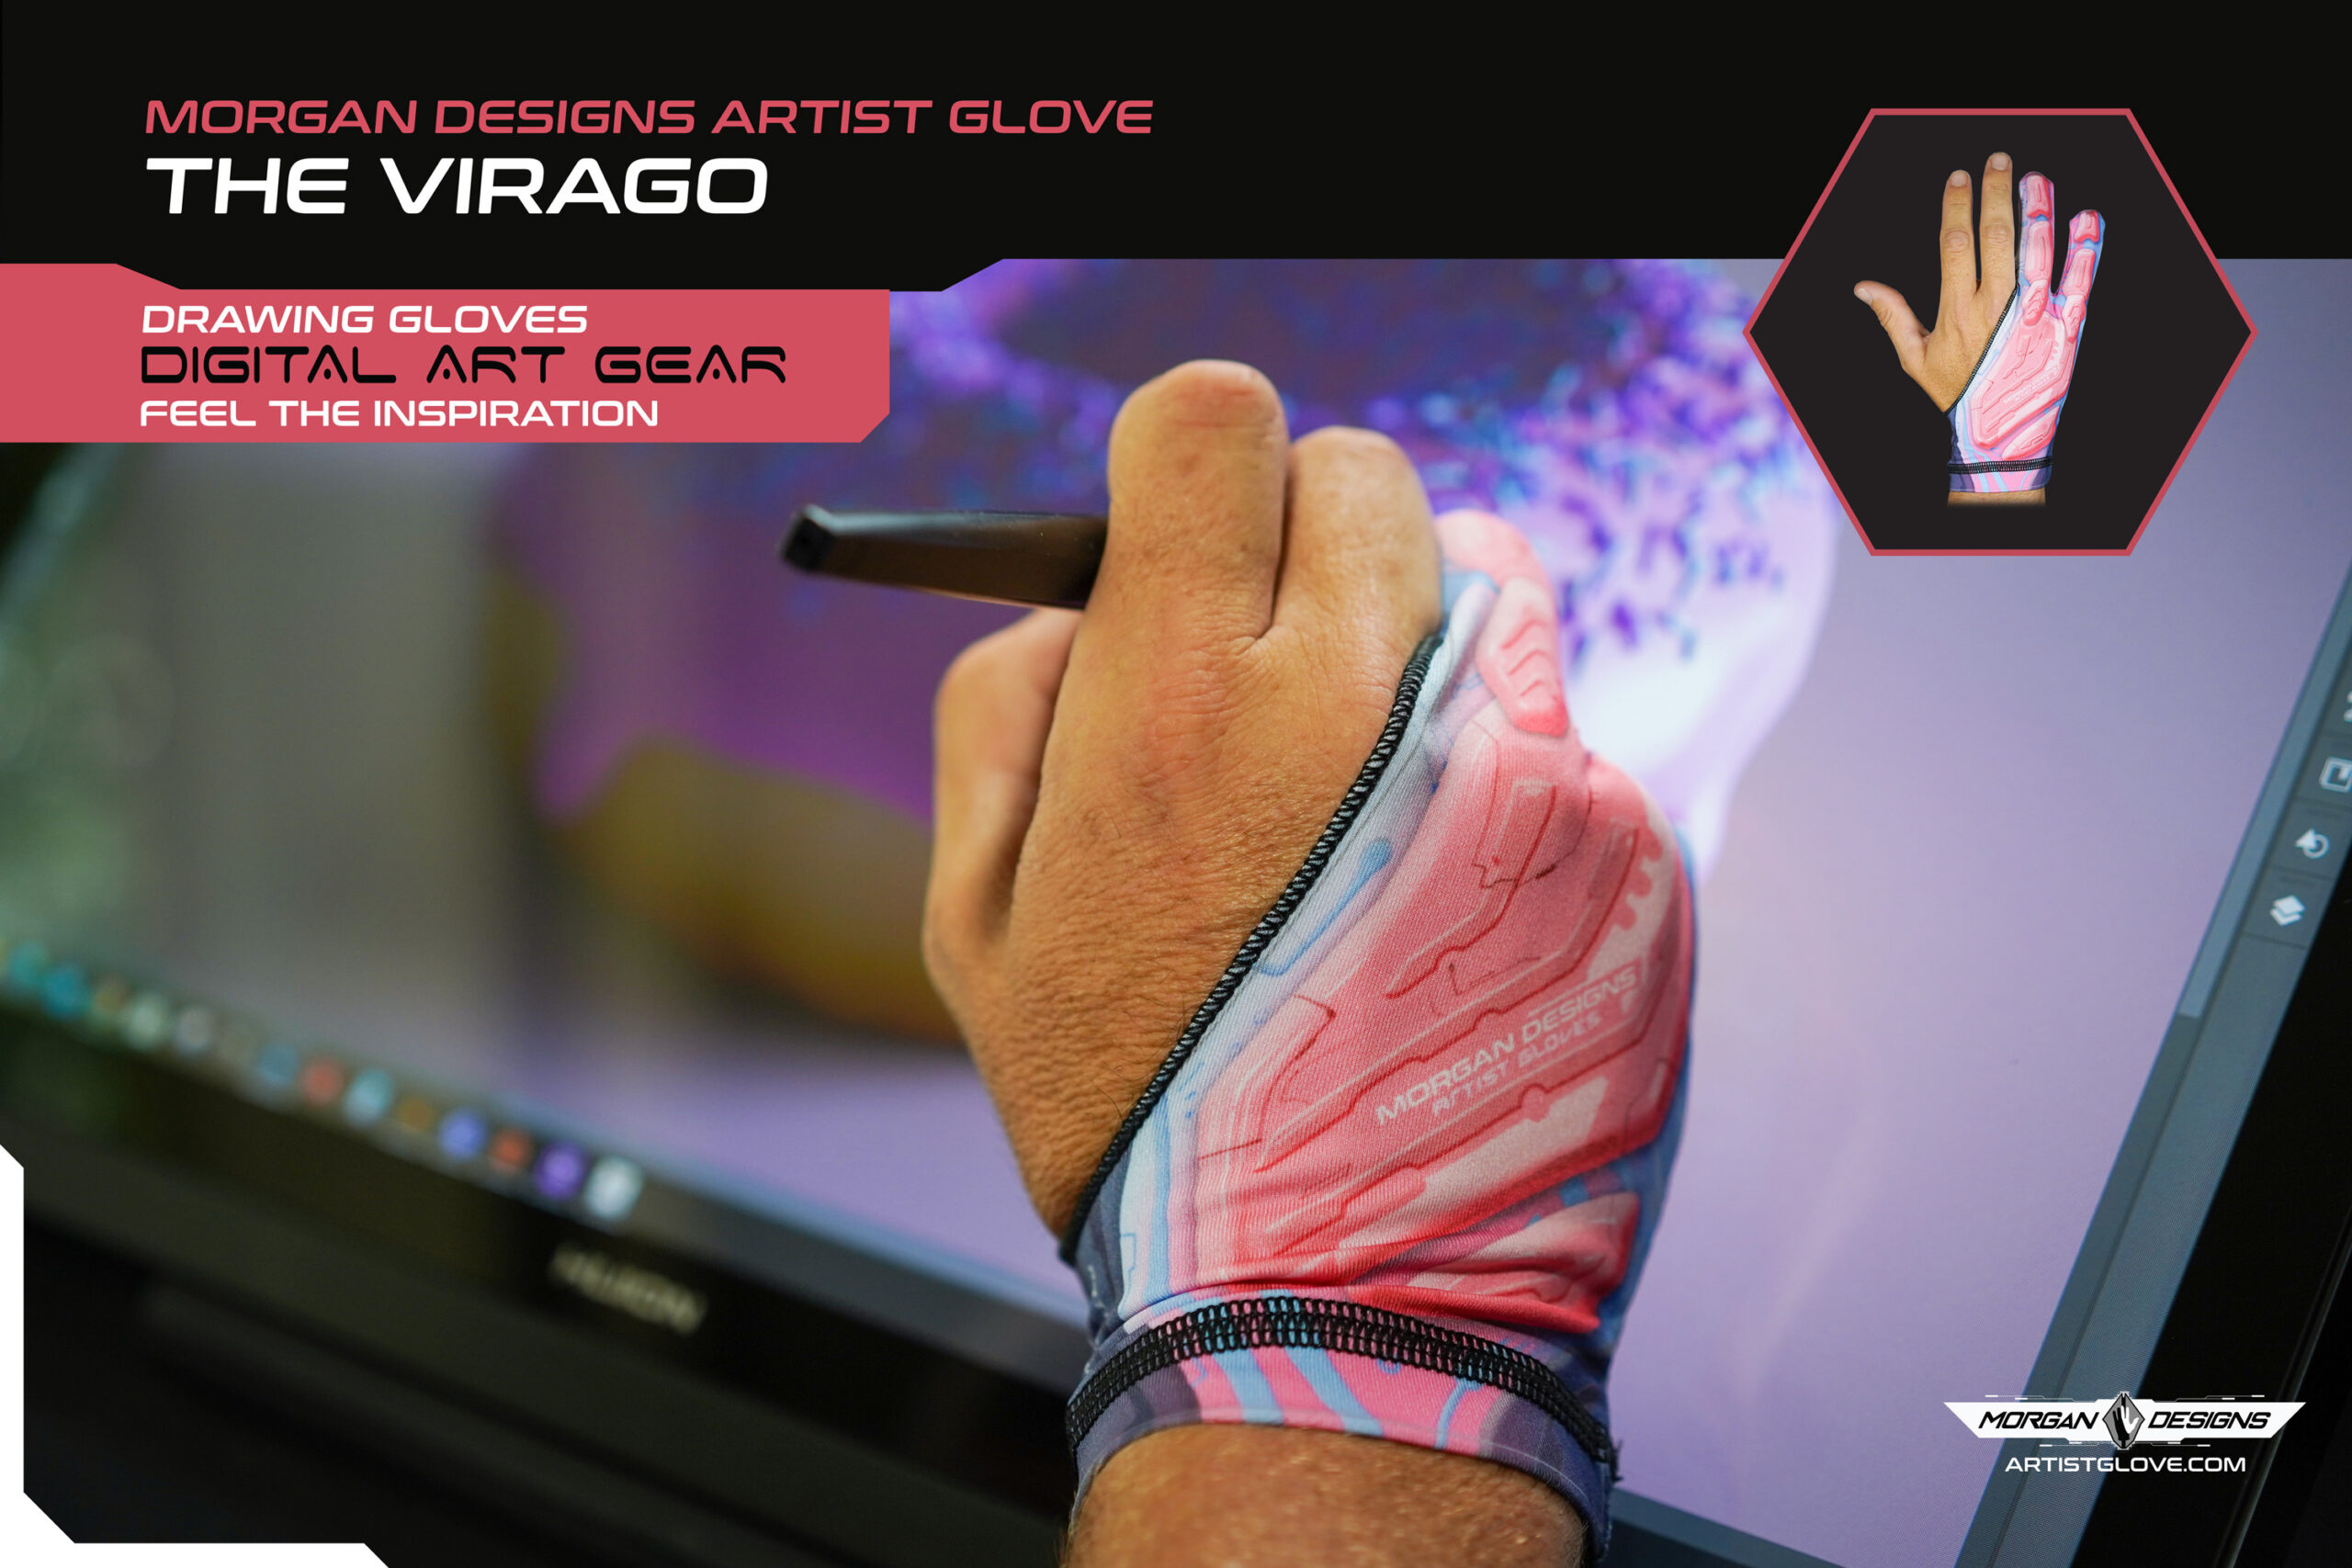 The Virago - Artist Glove